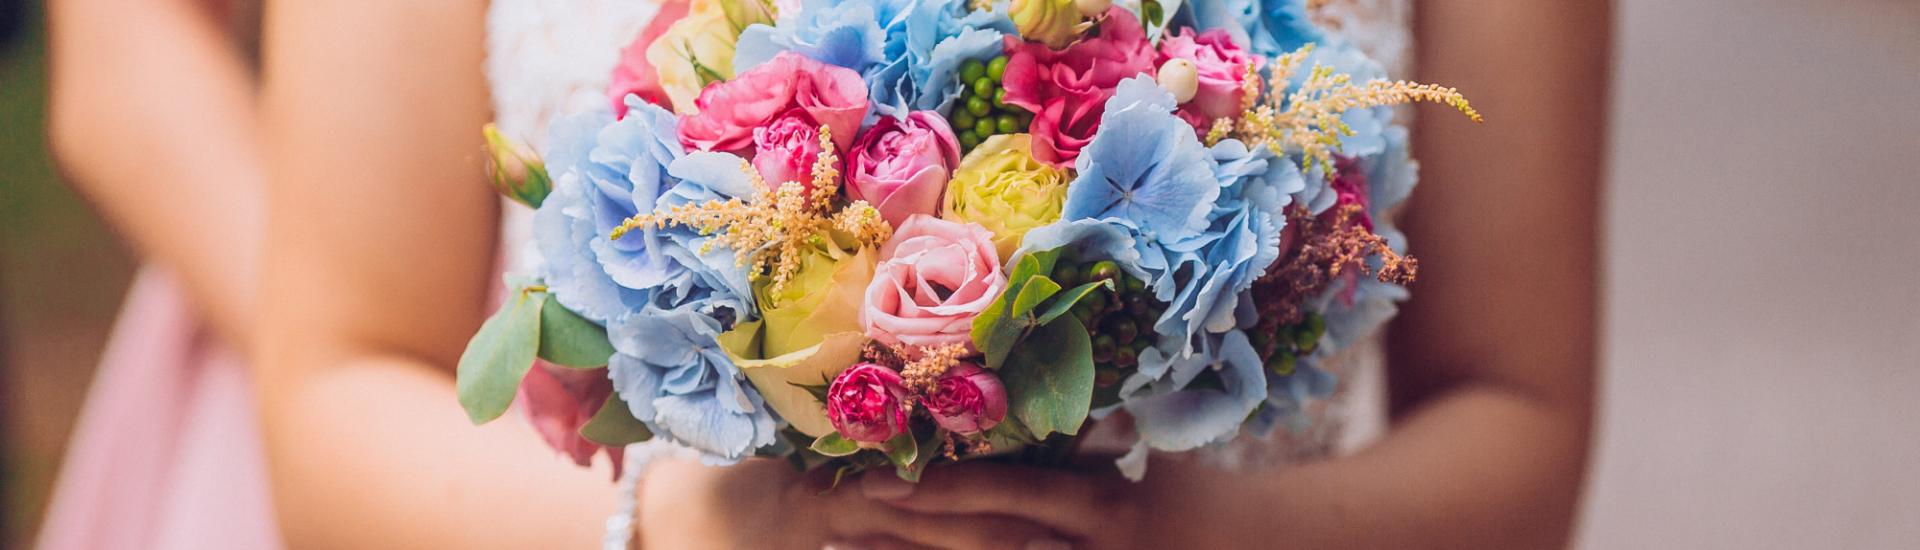 De juiste bloem voor uw bruiloft 